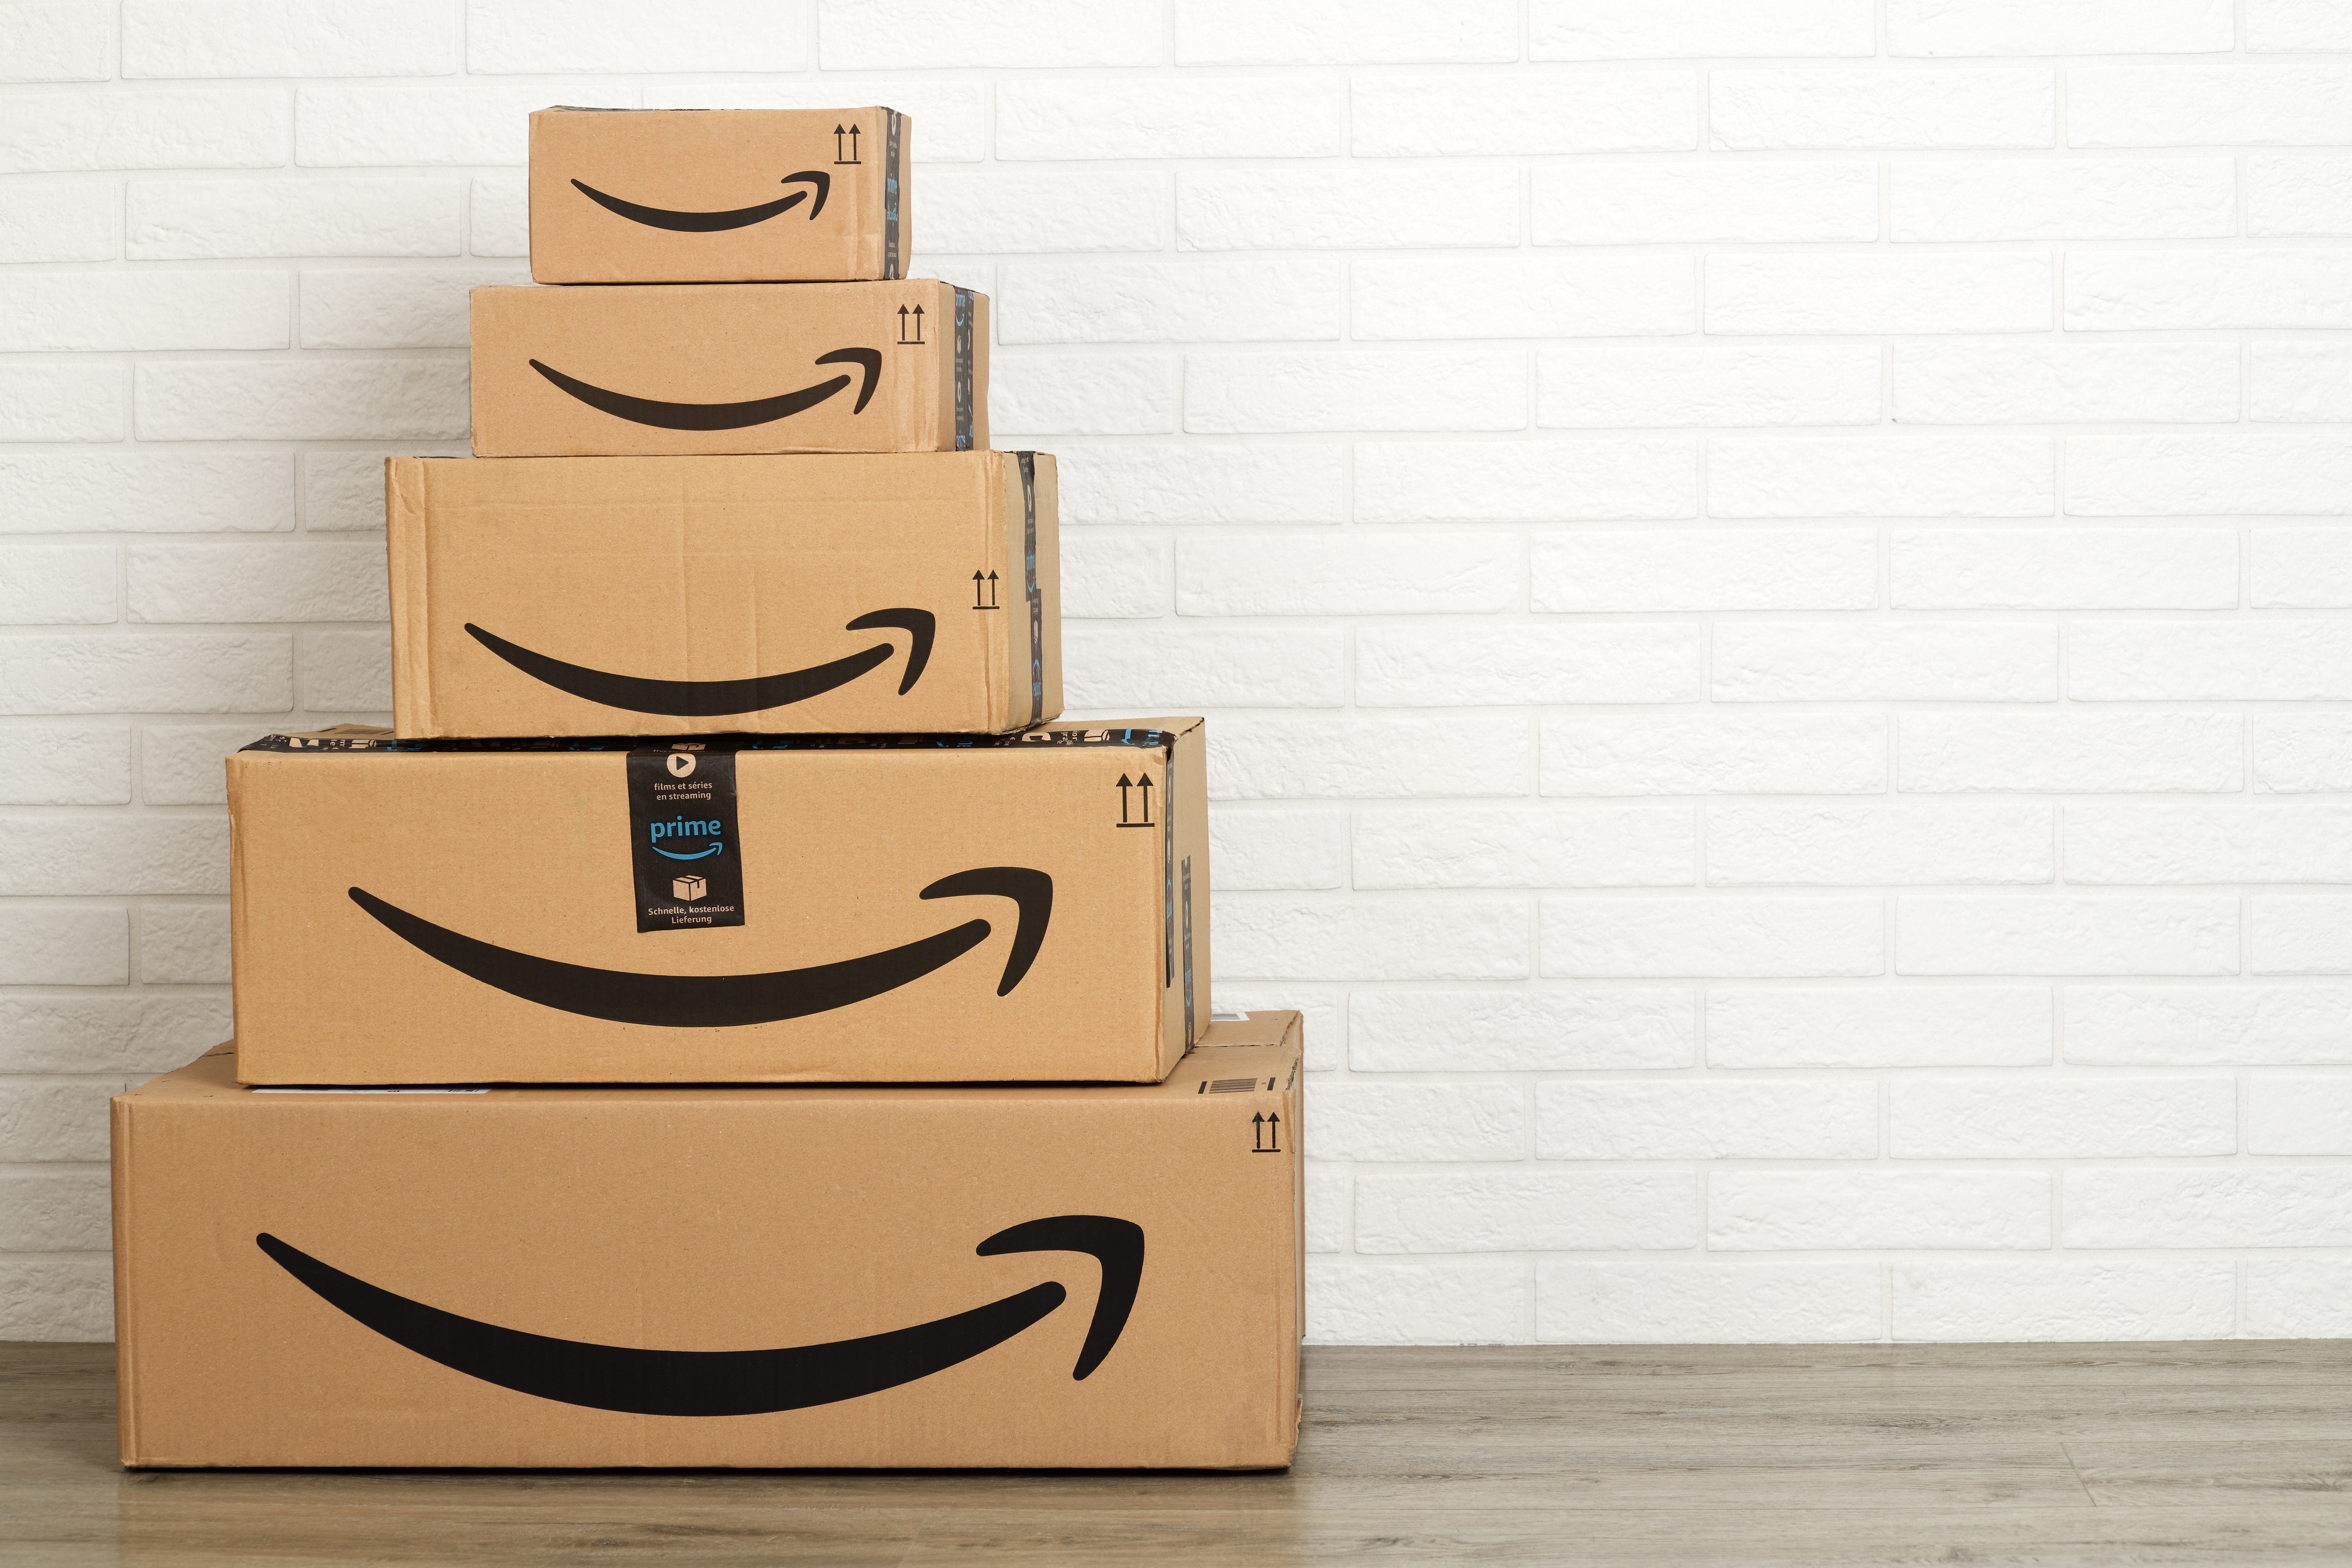 Amazon, the world’s largest online marketplace